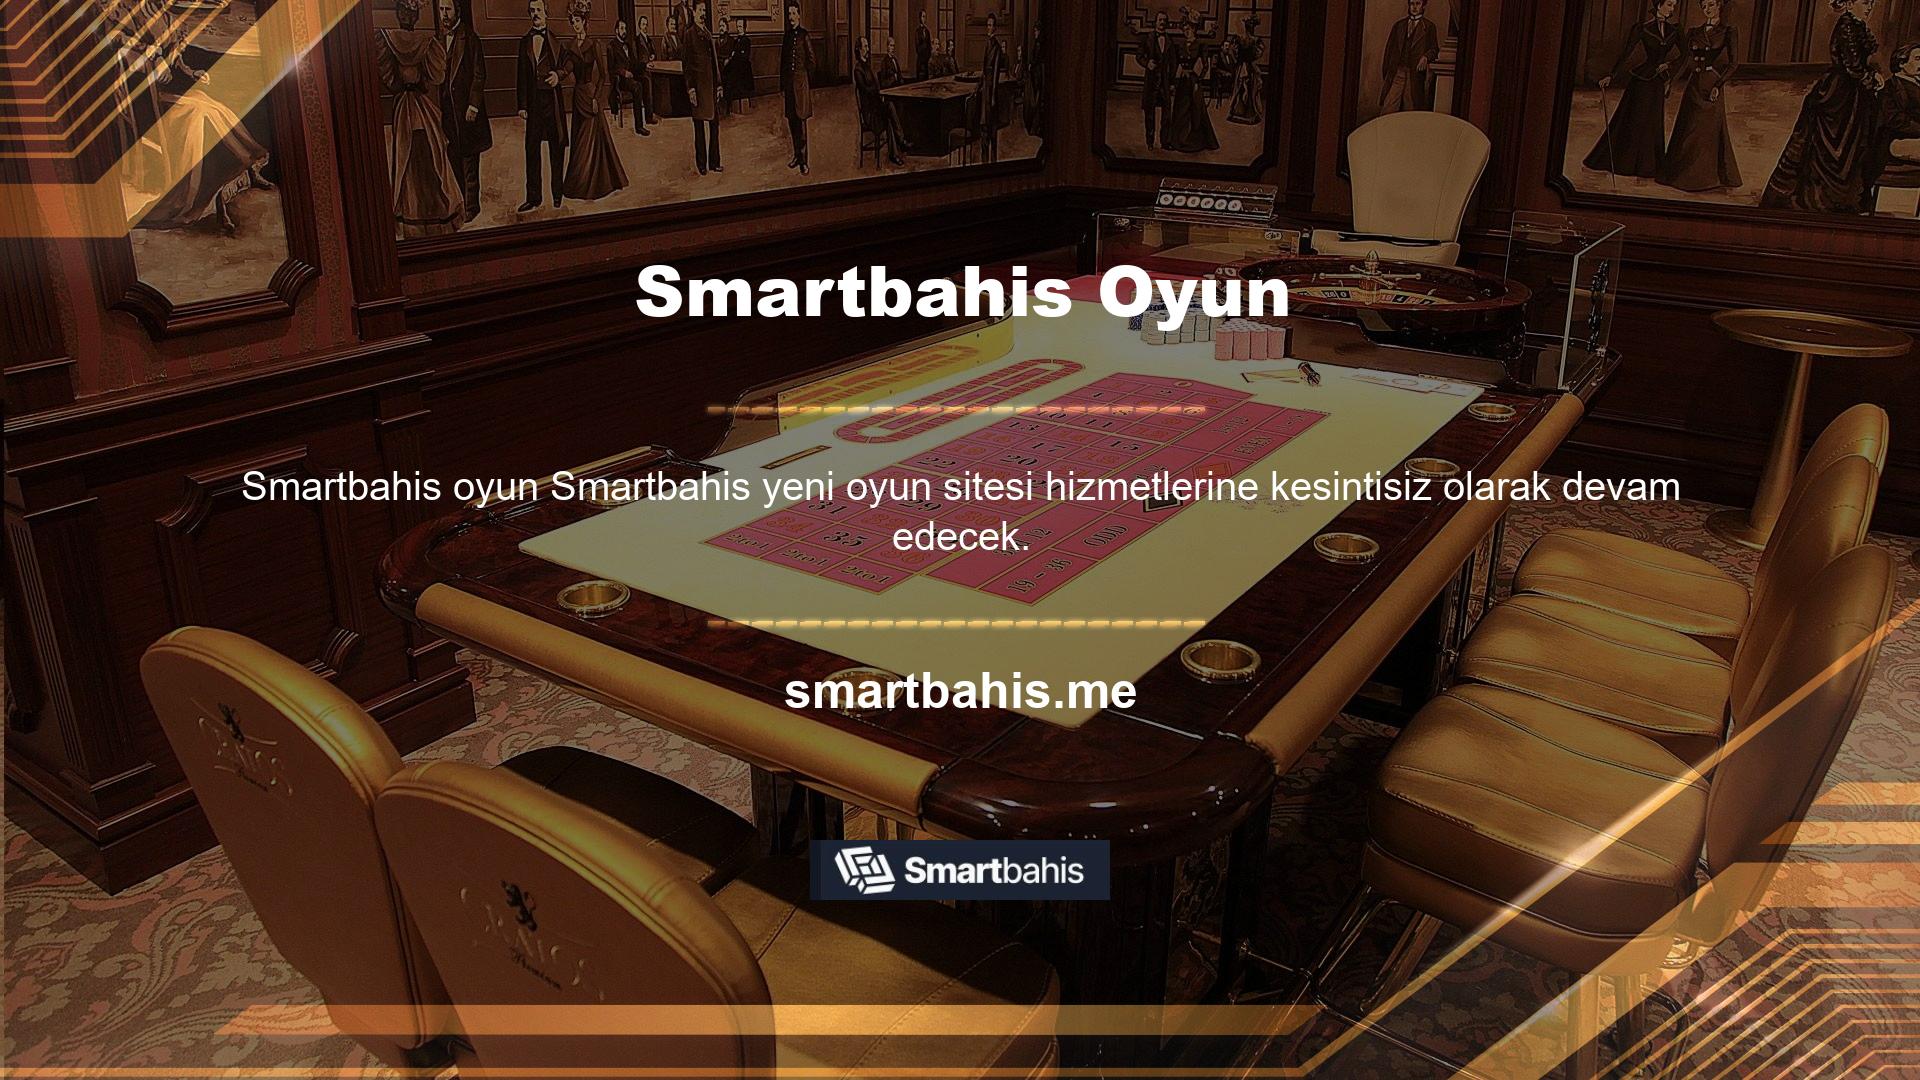 Smartbahis Gaming'e üye olarak canlı casino ve canlı spor bahisleri oynamaya devam ederek hayalinize bir adım daha yaklaşabilirsiniz